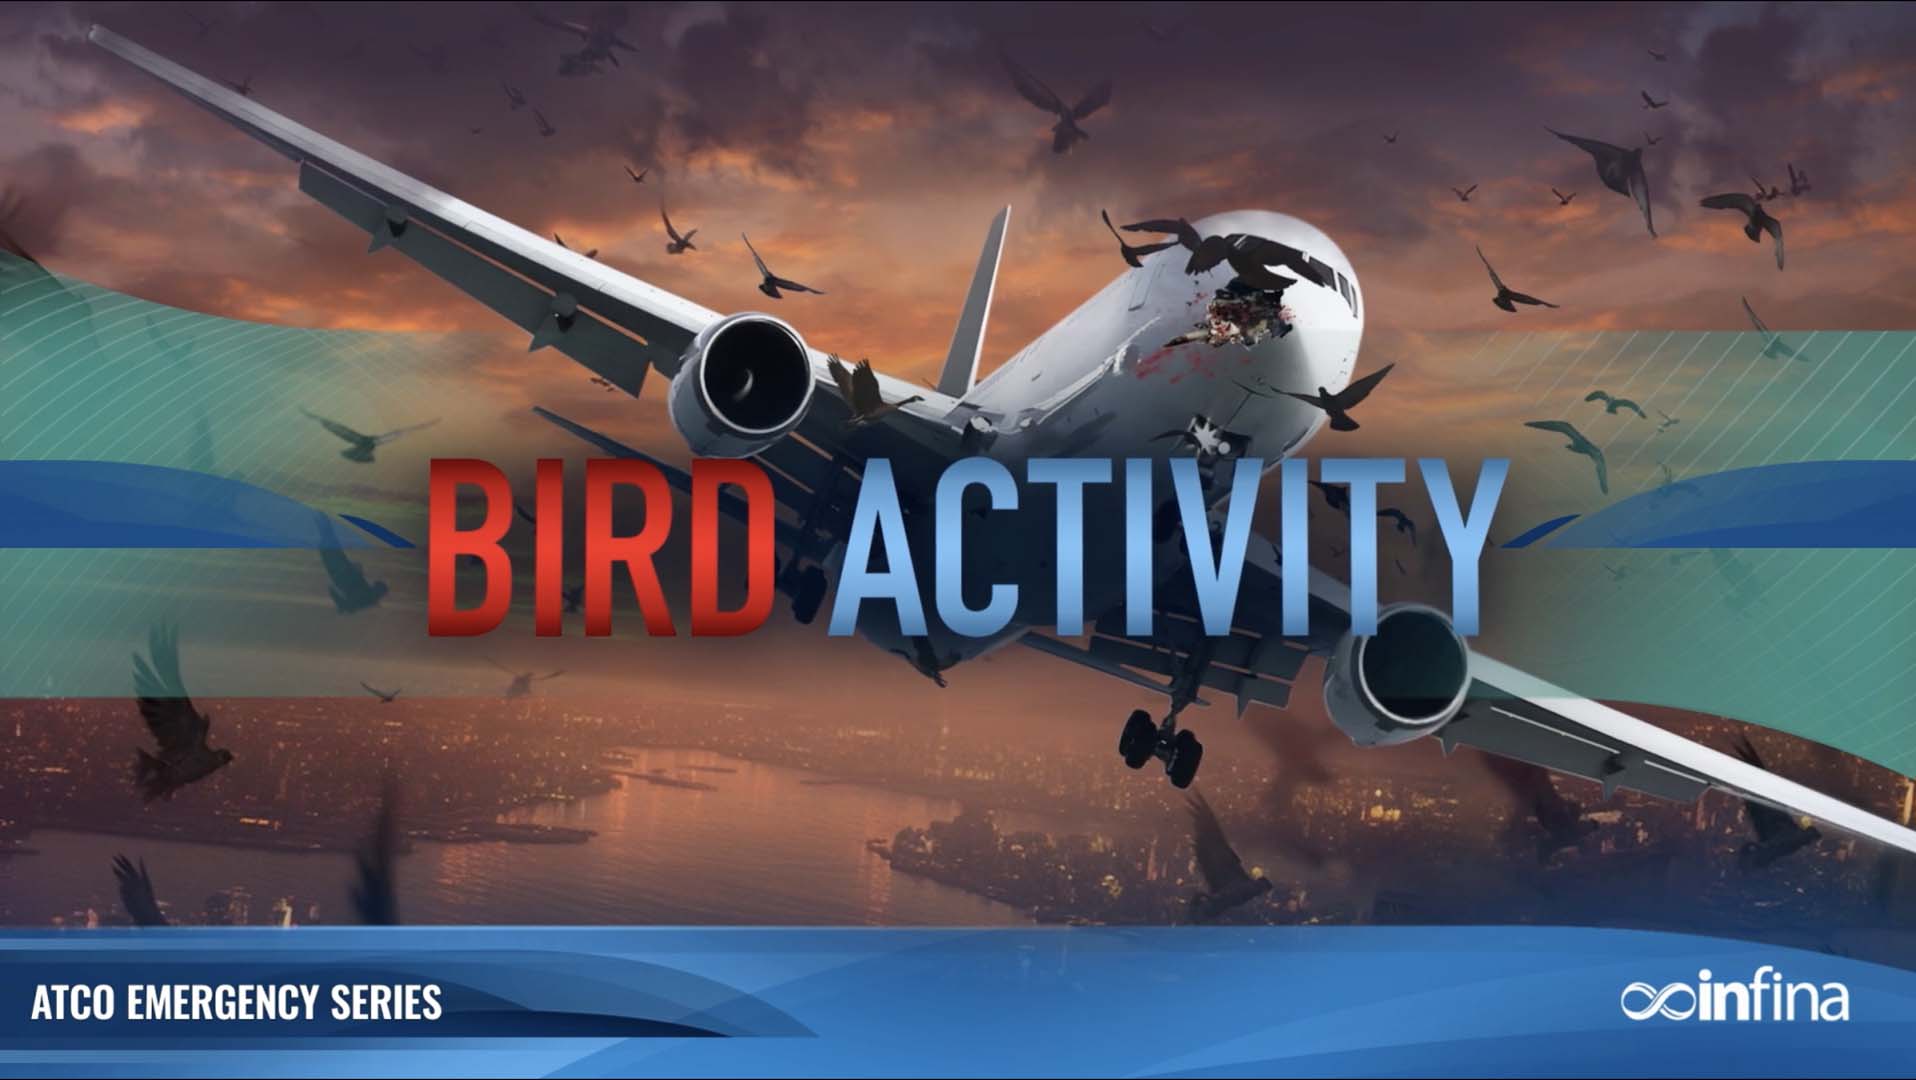 Emergencies: Bird Activity